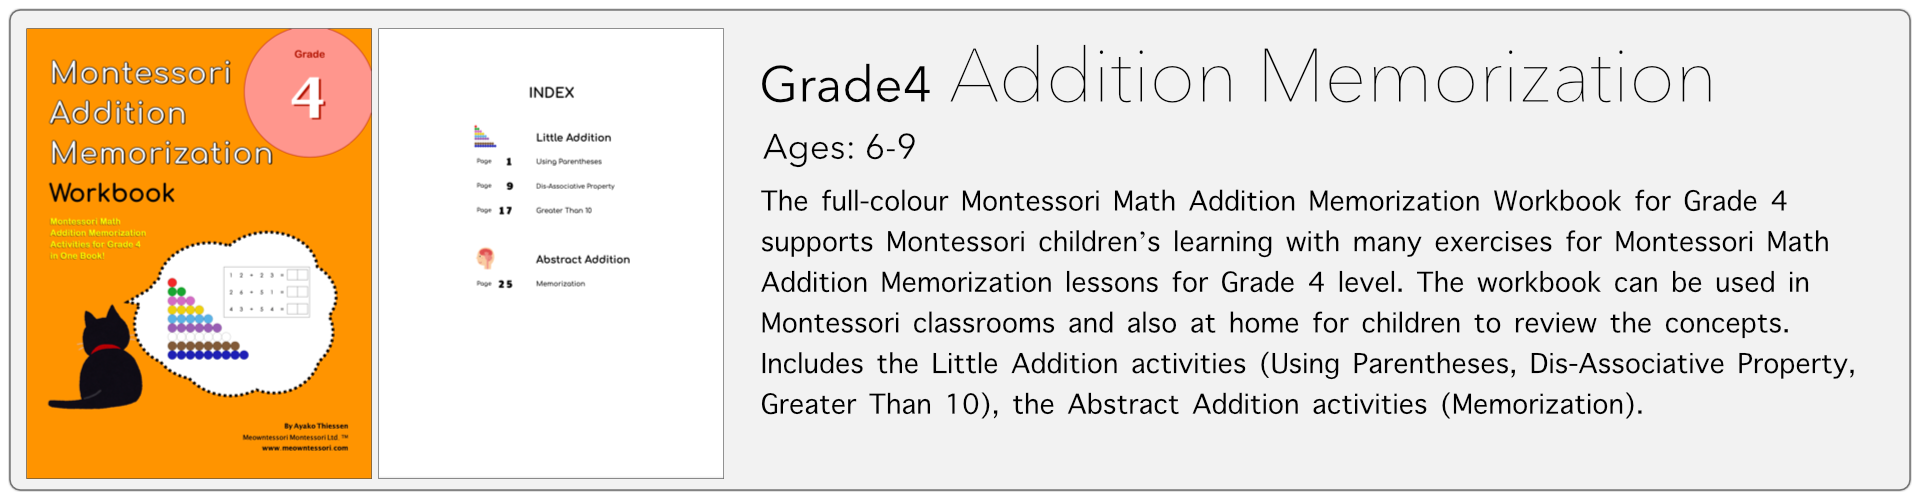 grade4 addition memorization